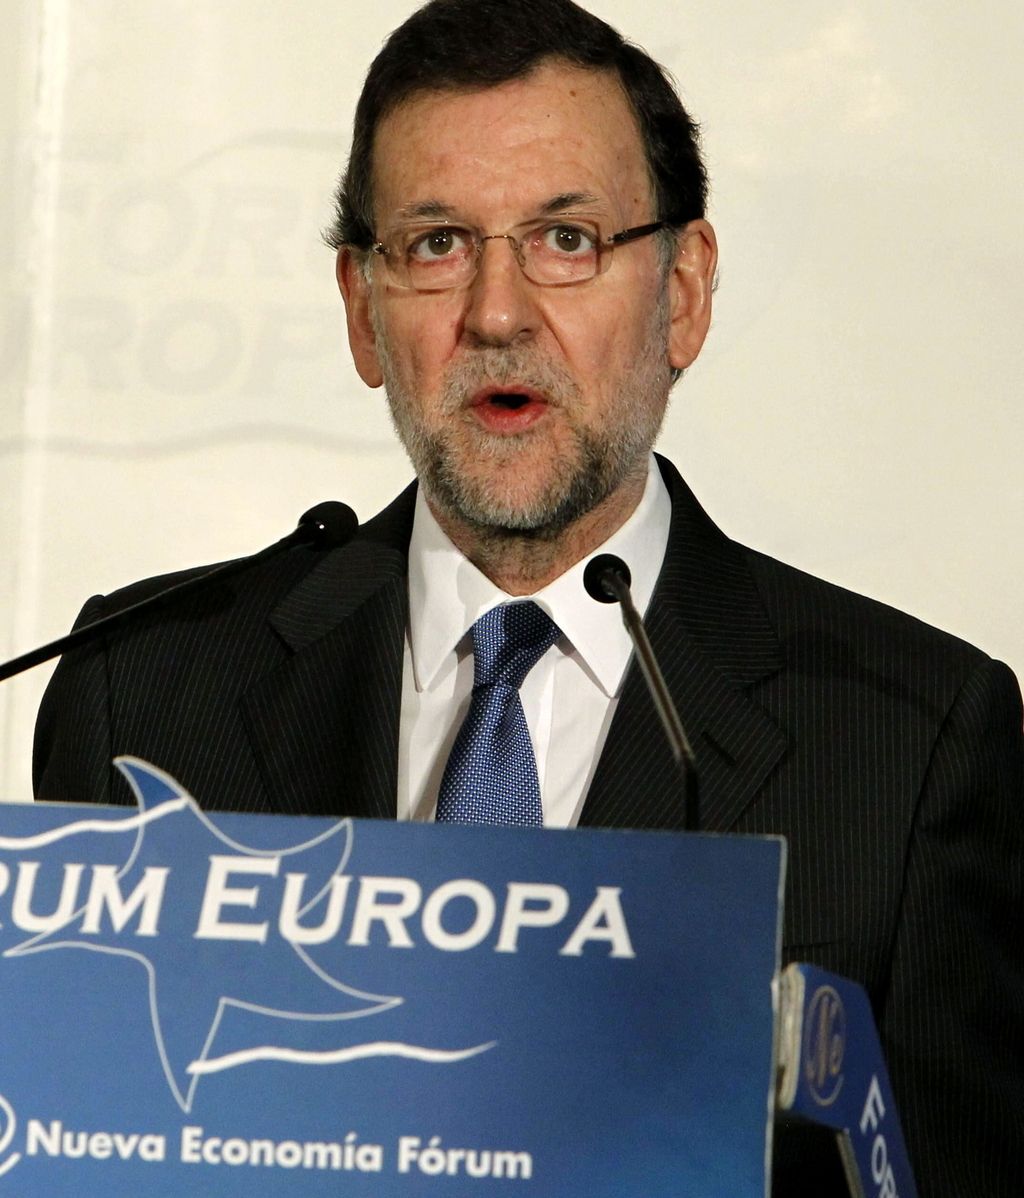 Rajoy expresa su "agradecimiento personal y político" a Cospedal